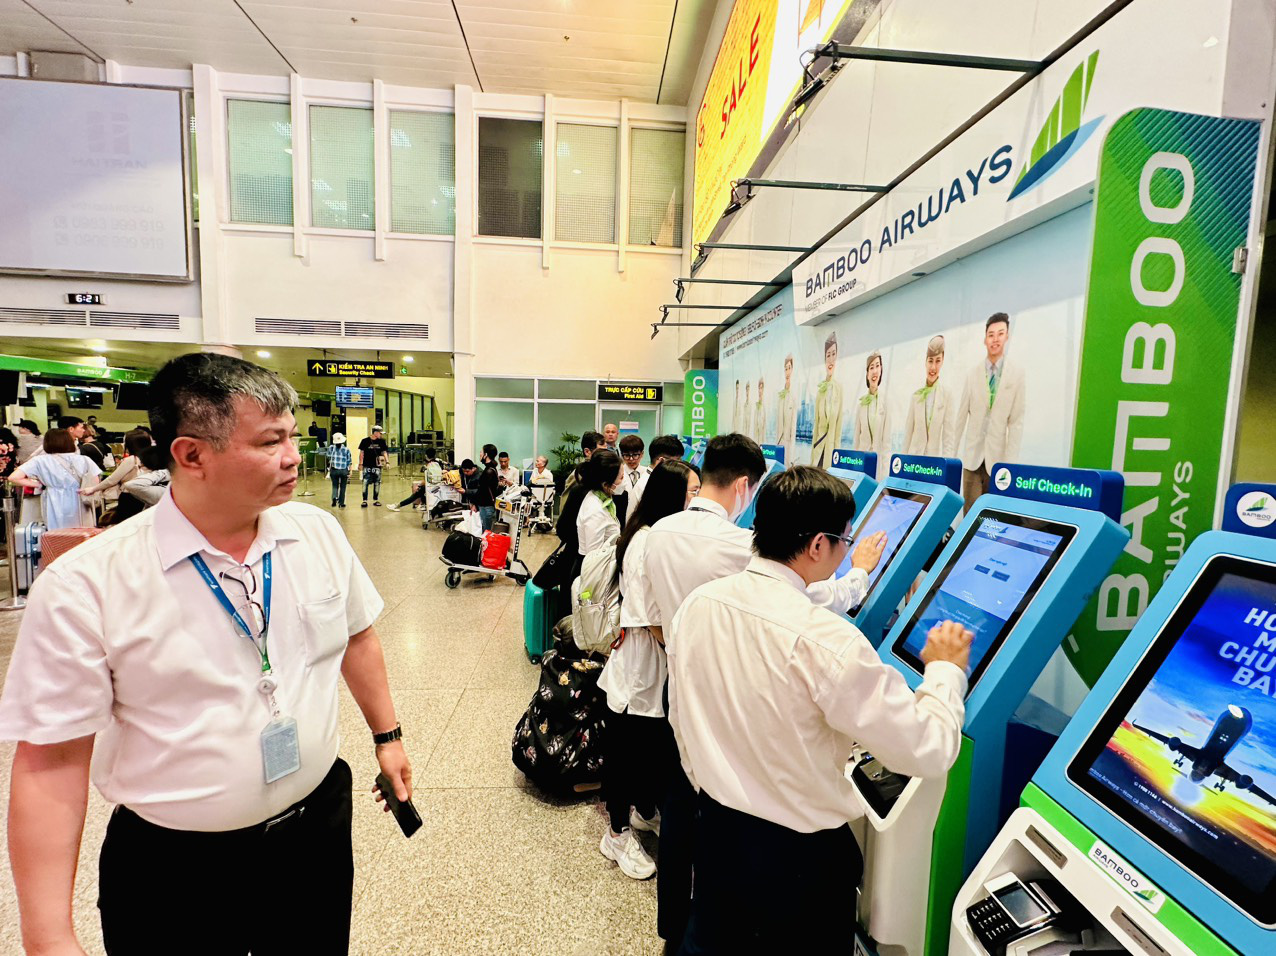 Ông Lương Hoài Nam, tổng giám đốc Bamboo Airways, đến giám sát các khâu dịch vụ đối tác mới cung cấp cho hãng - Ảnh: CÔNG TRUNG